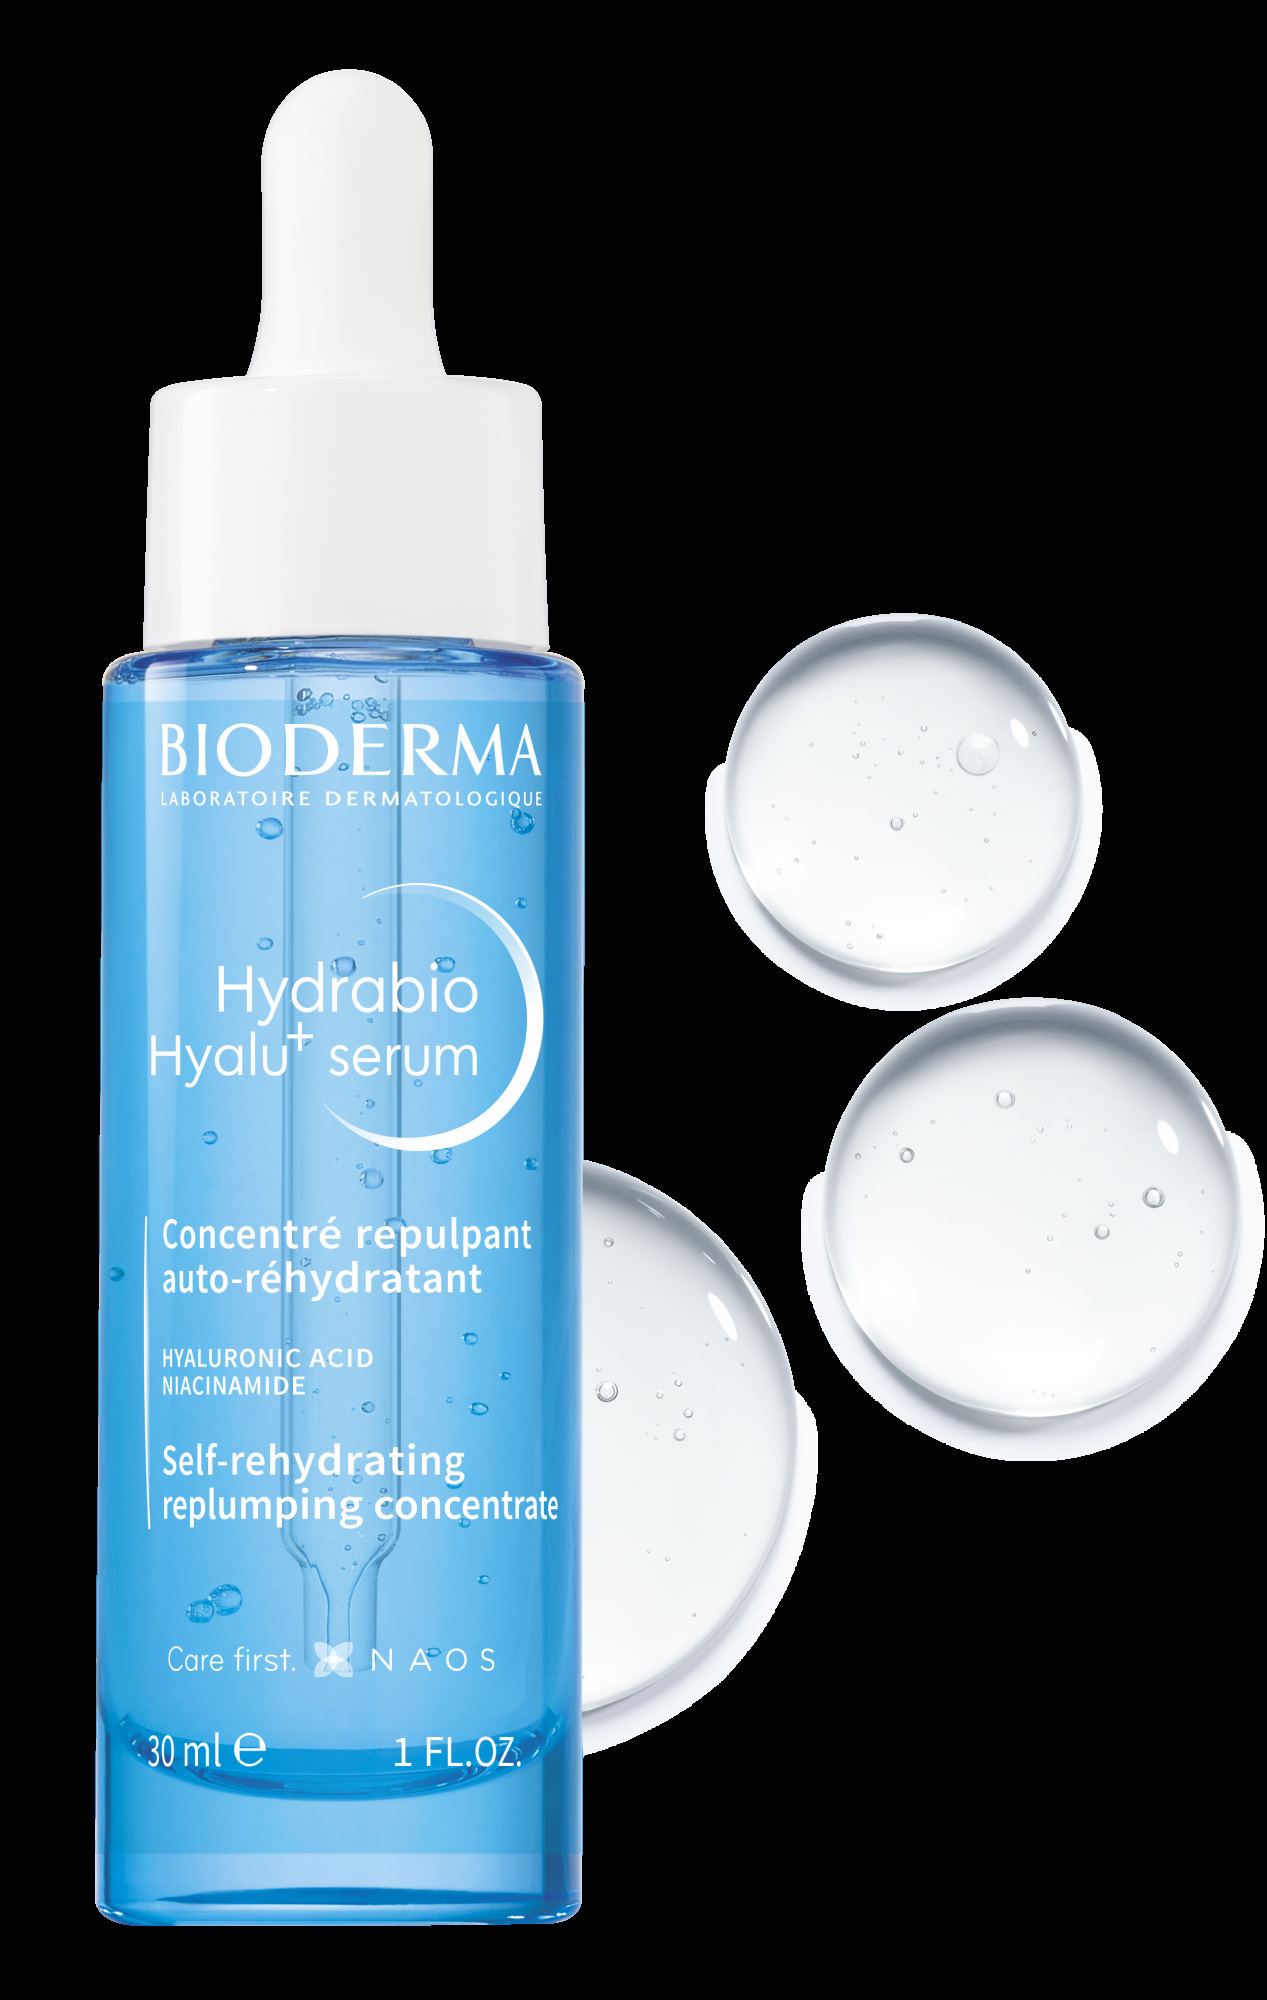 Das feuchtigkeitsspendende Gesichtsserum Bioderma Hydrabio Hyalu+ hat meine Haut klebrig gemacht